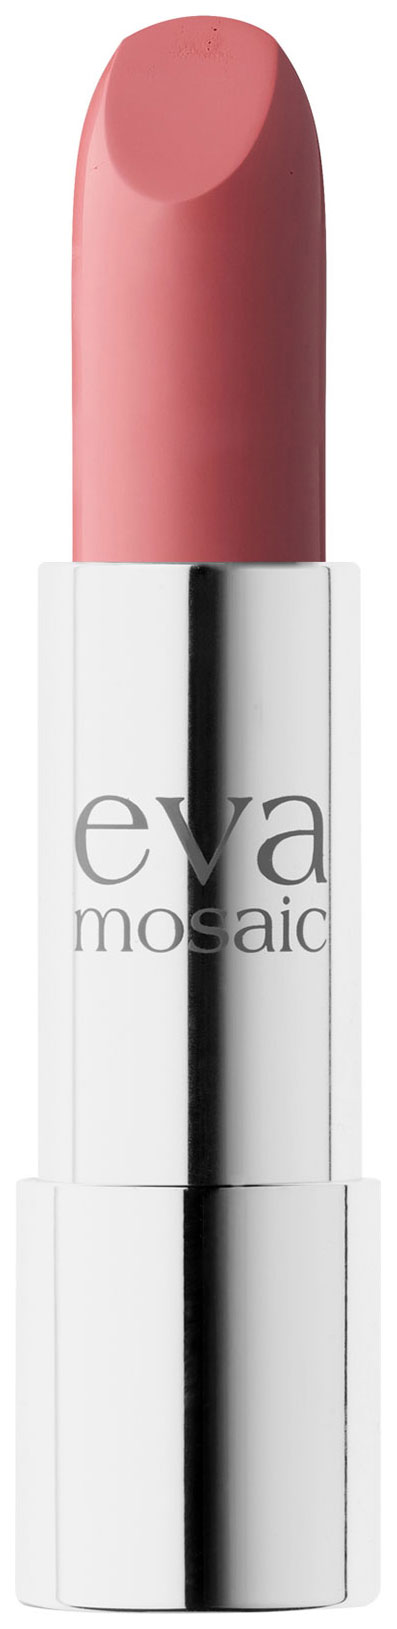 Помада Eva Mosaic Cream Desire 10 4 г лоскутик и облако ил а власовой